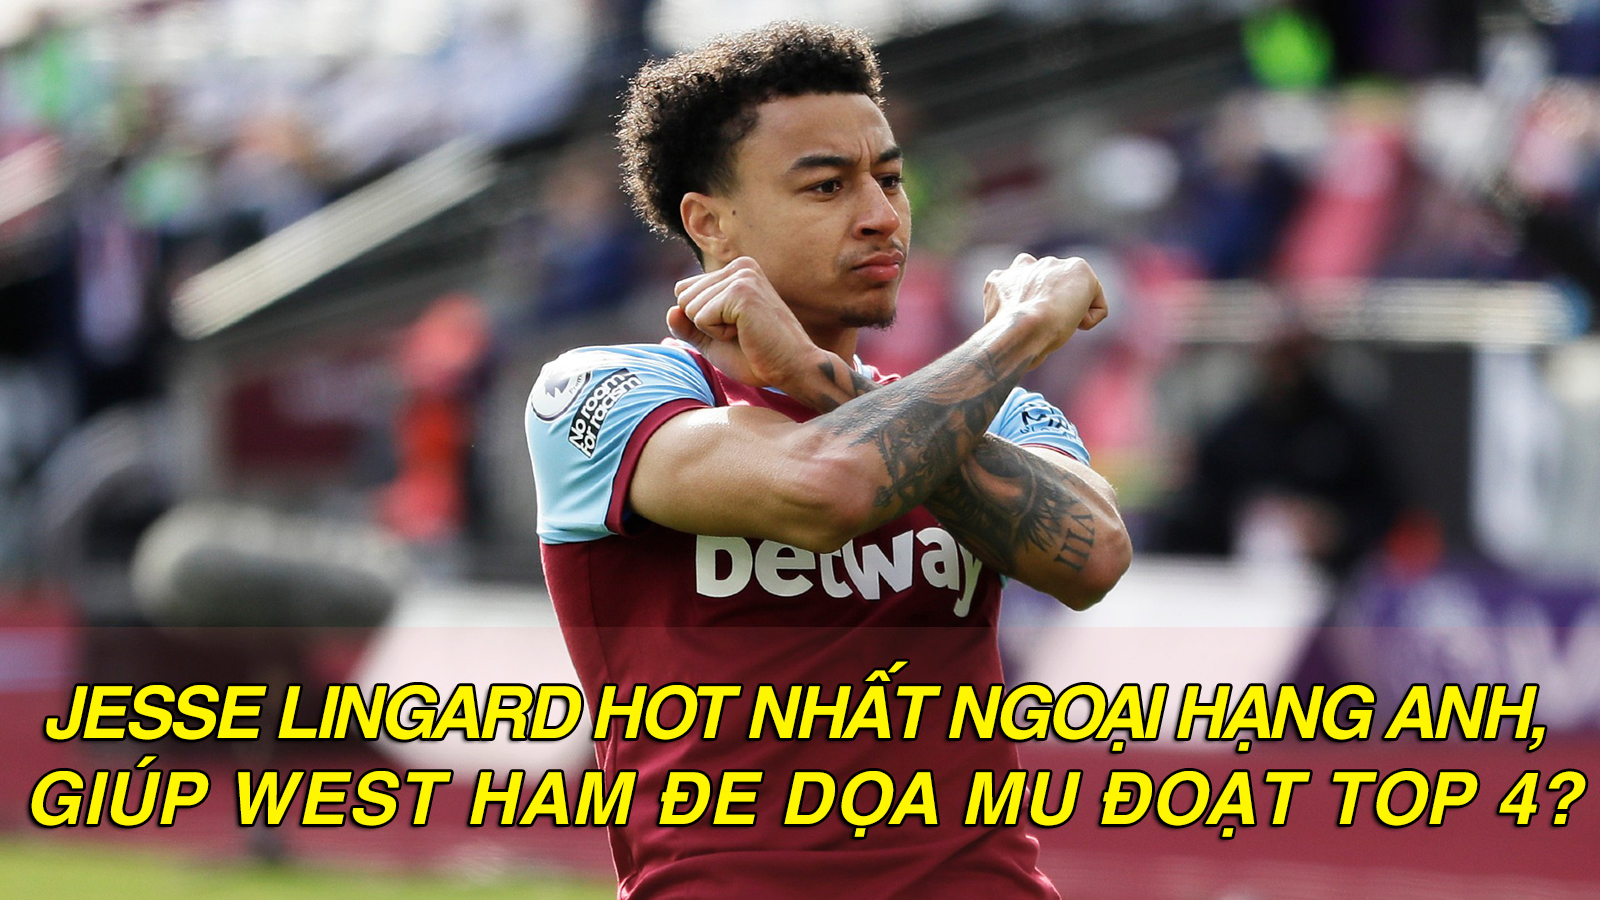 Jesse Lingard hot nhất Ngoại hạng Anh, giúp West Ham đe dọa MU đoạt top 4? - 1